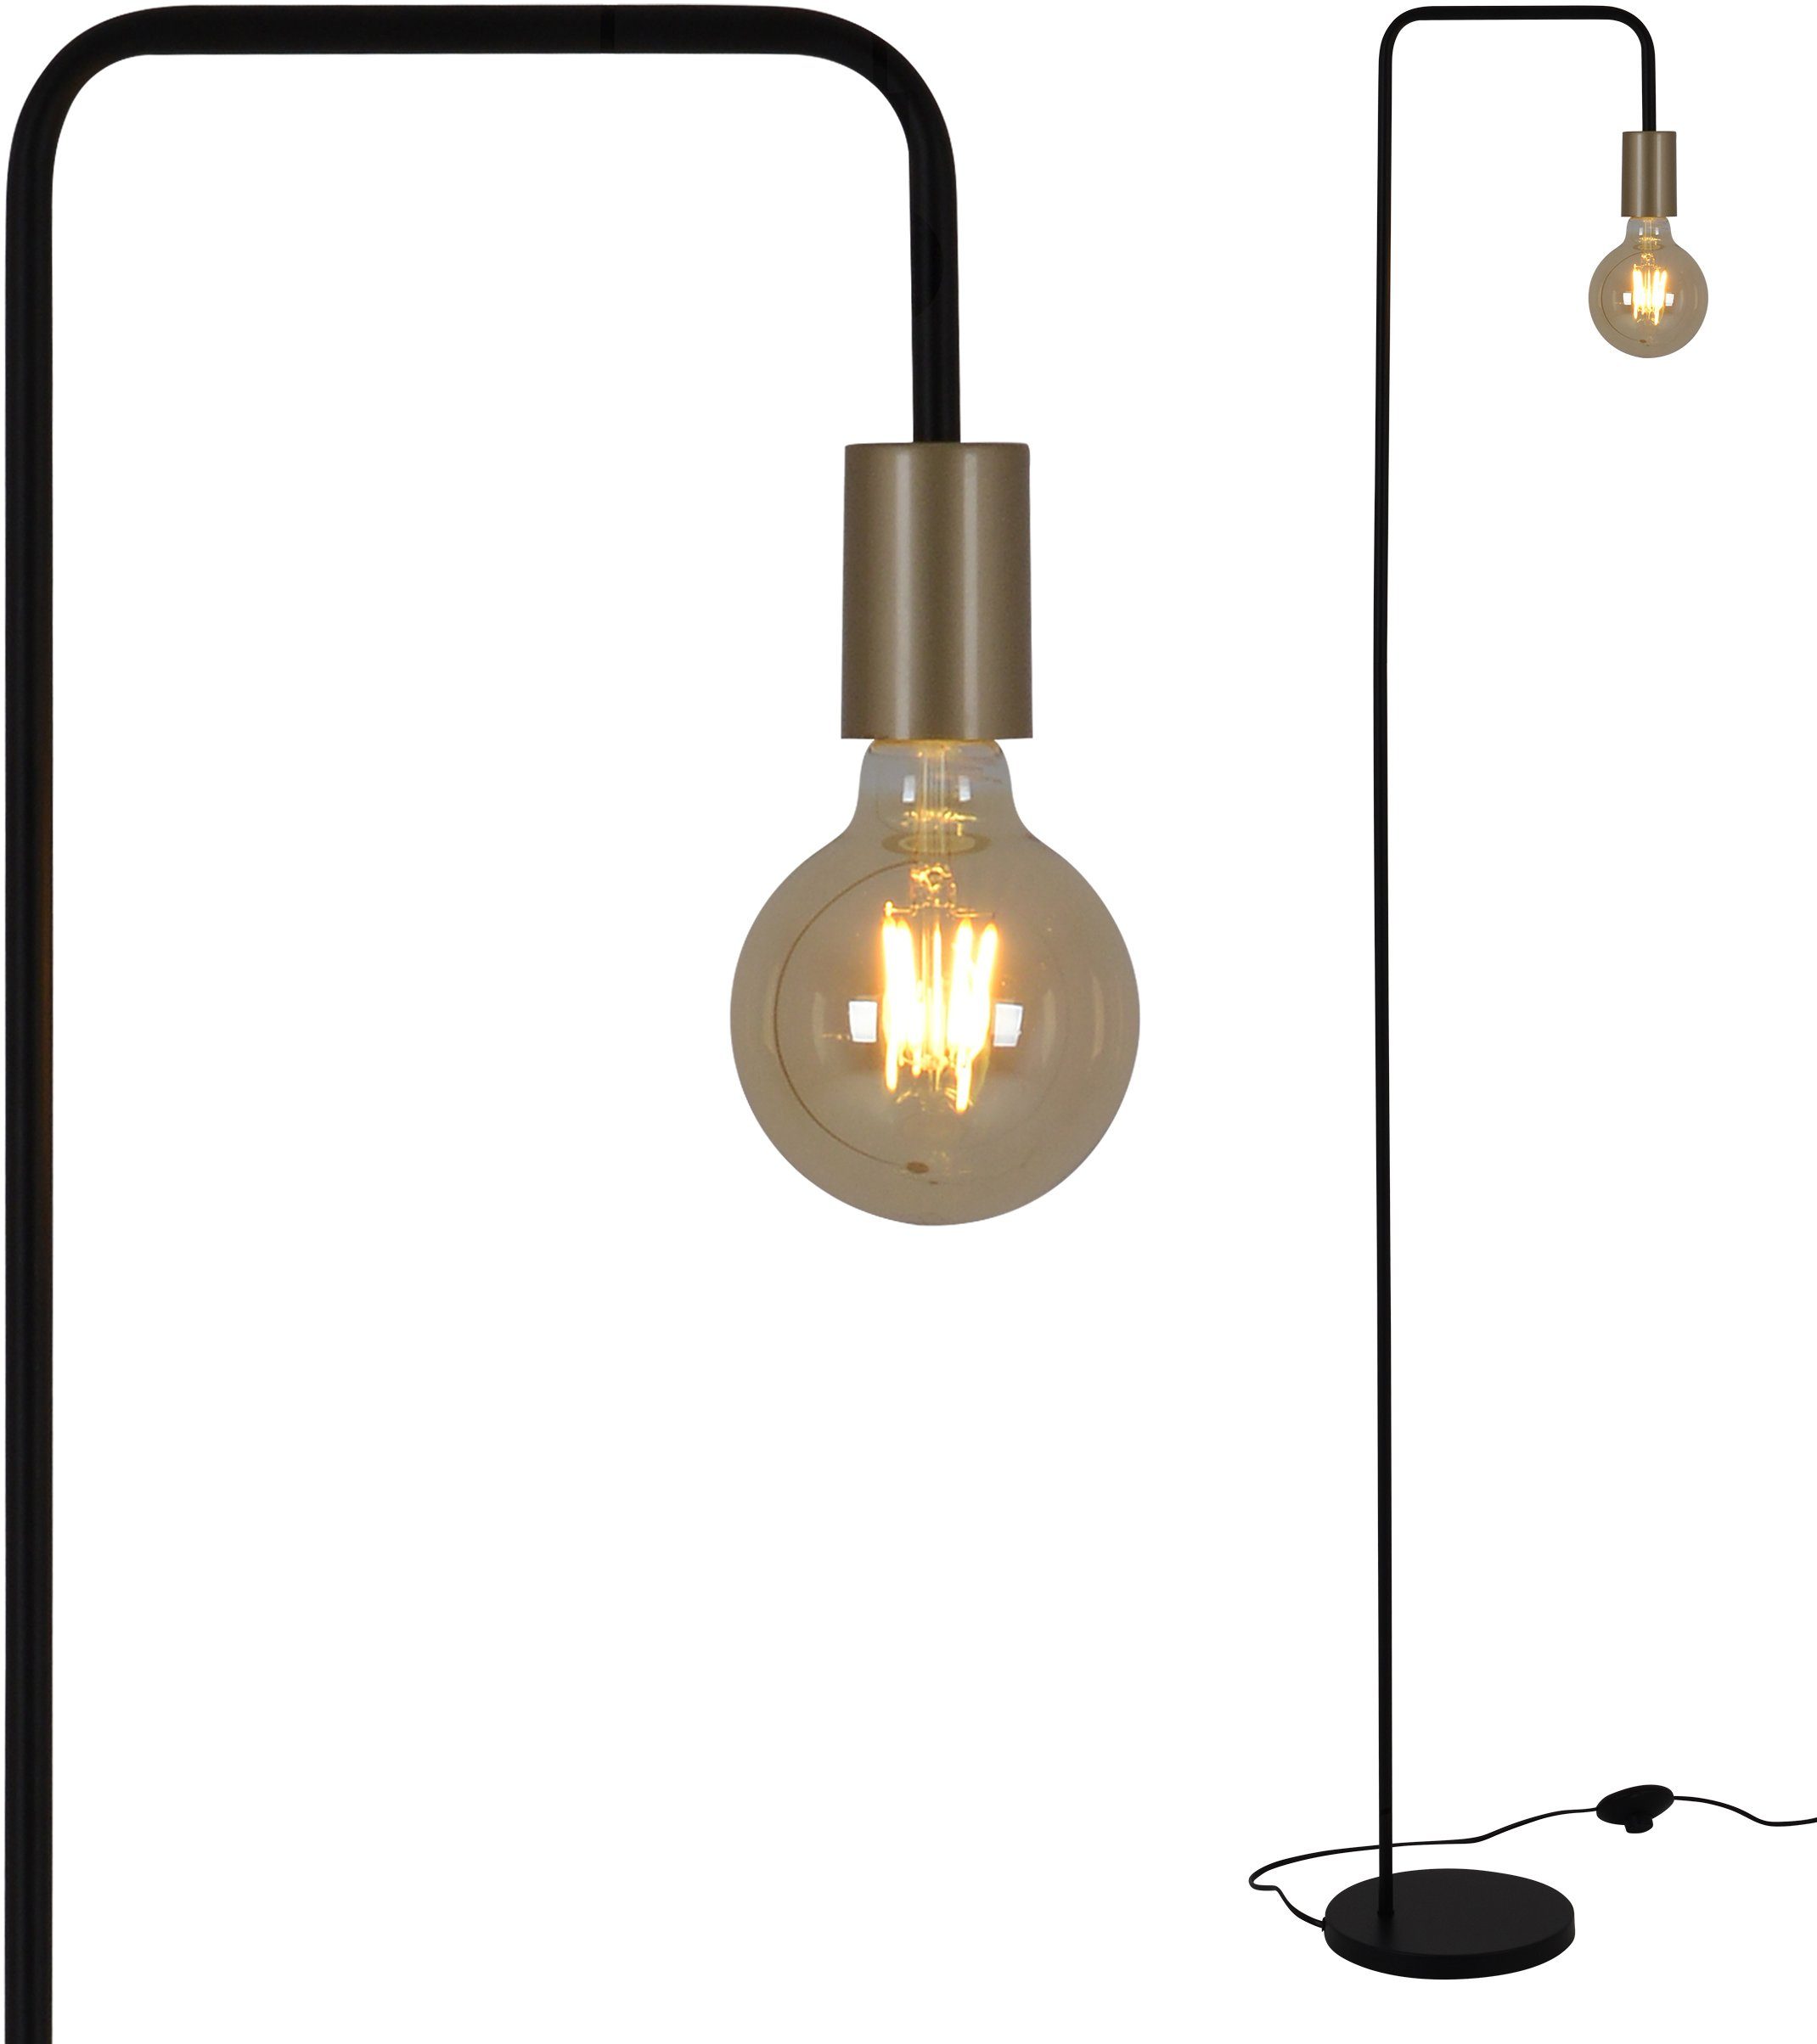 näve Stehlampe Modo, ohne b: 150cm, 40W, 20,5cm h: schwarz/gold, E27 Leuchtmittel, Fußschlater, max